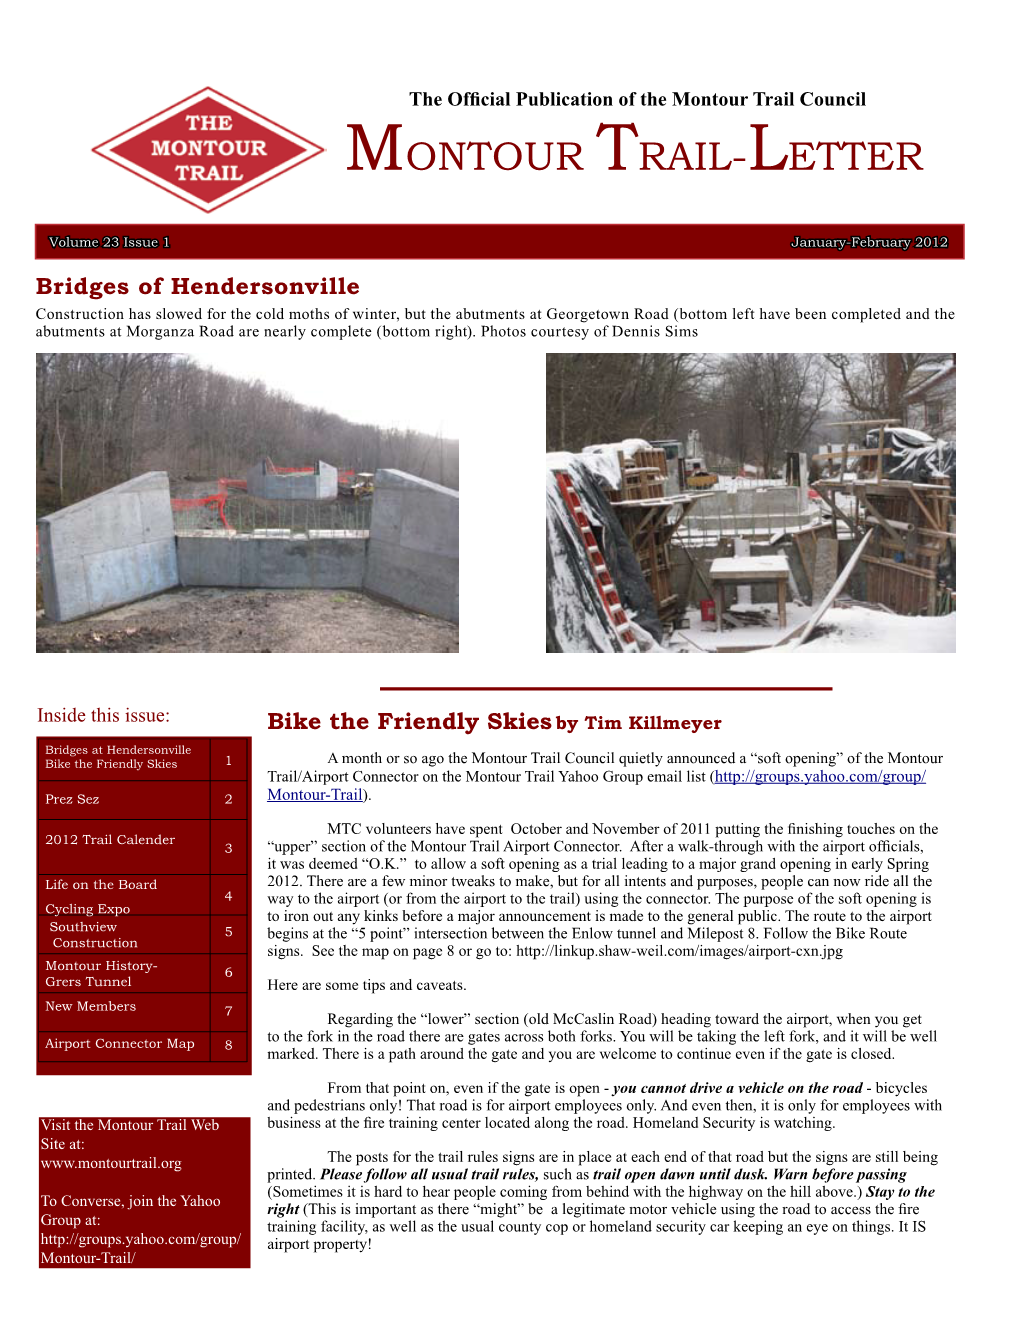 January-February Newsletter